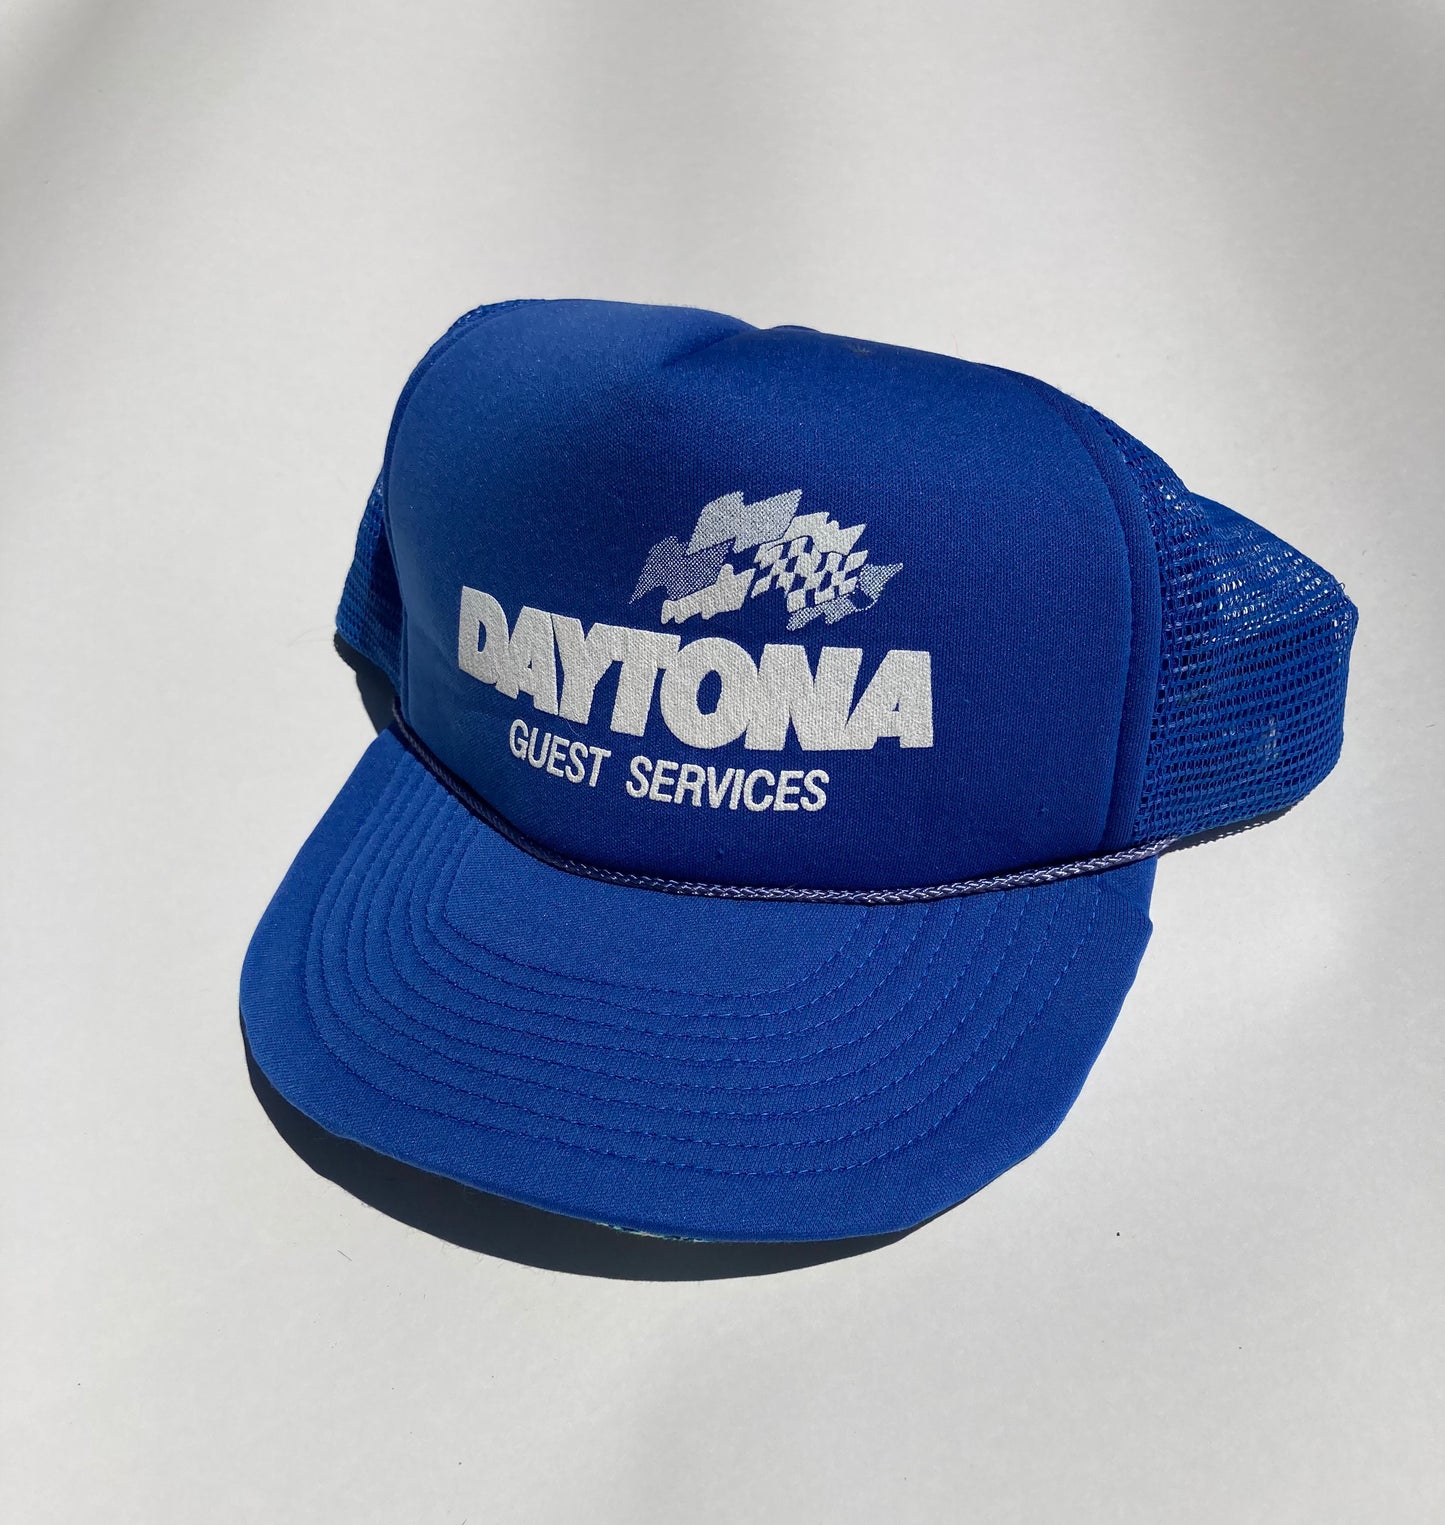 Daytona 500 vintage hat